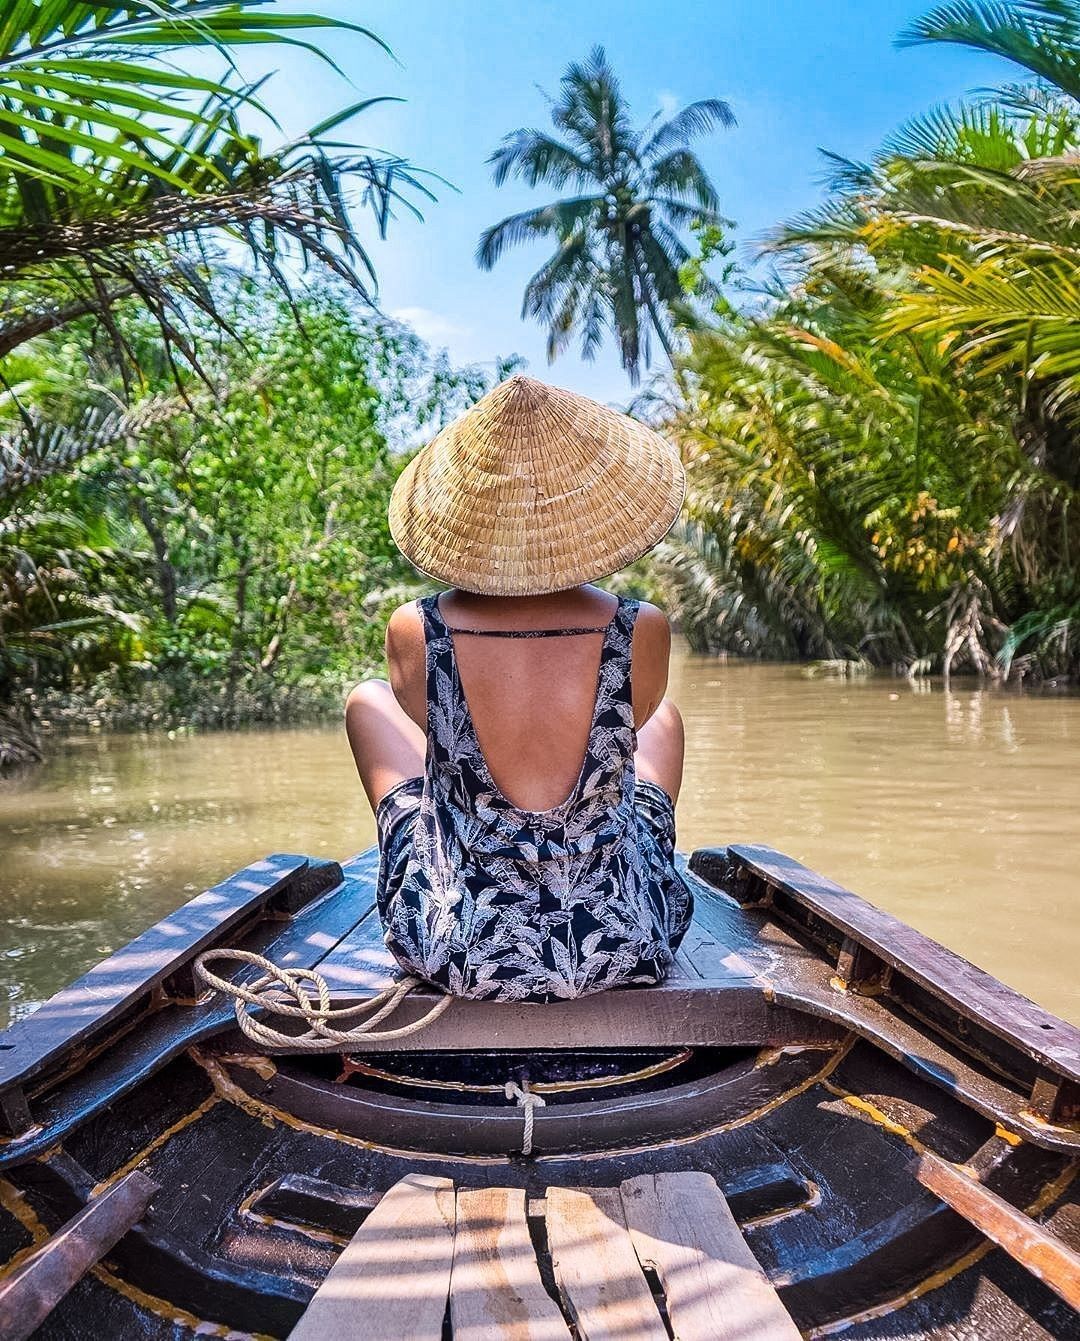 vietnam photography tours mekong delta